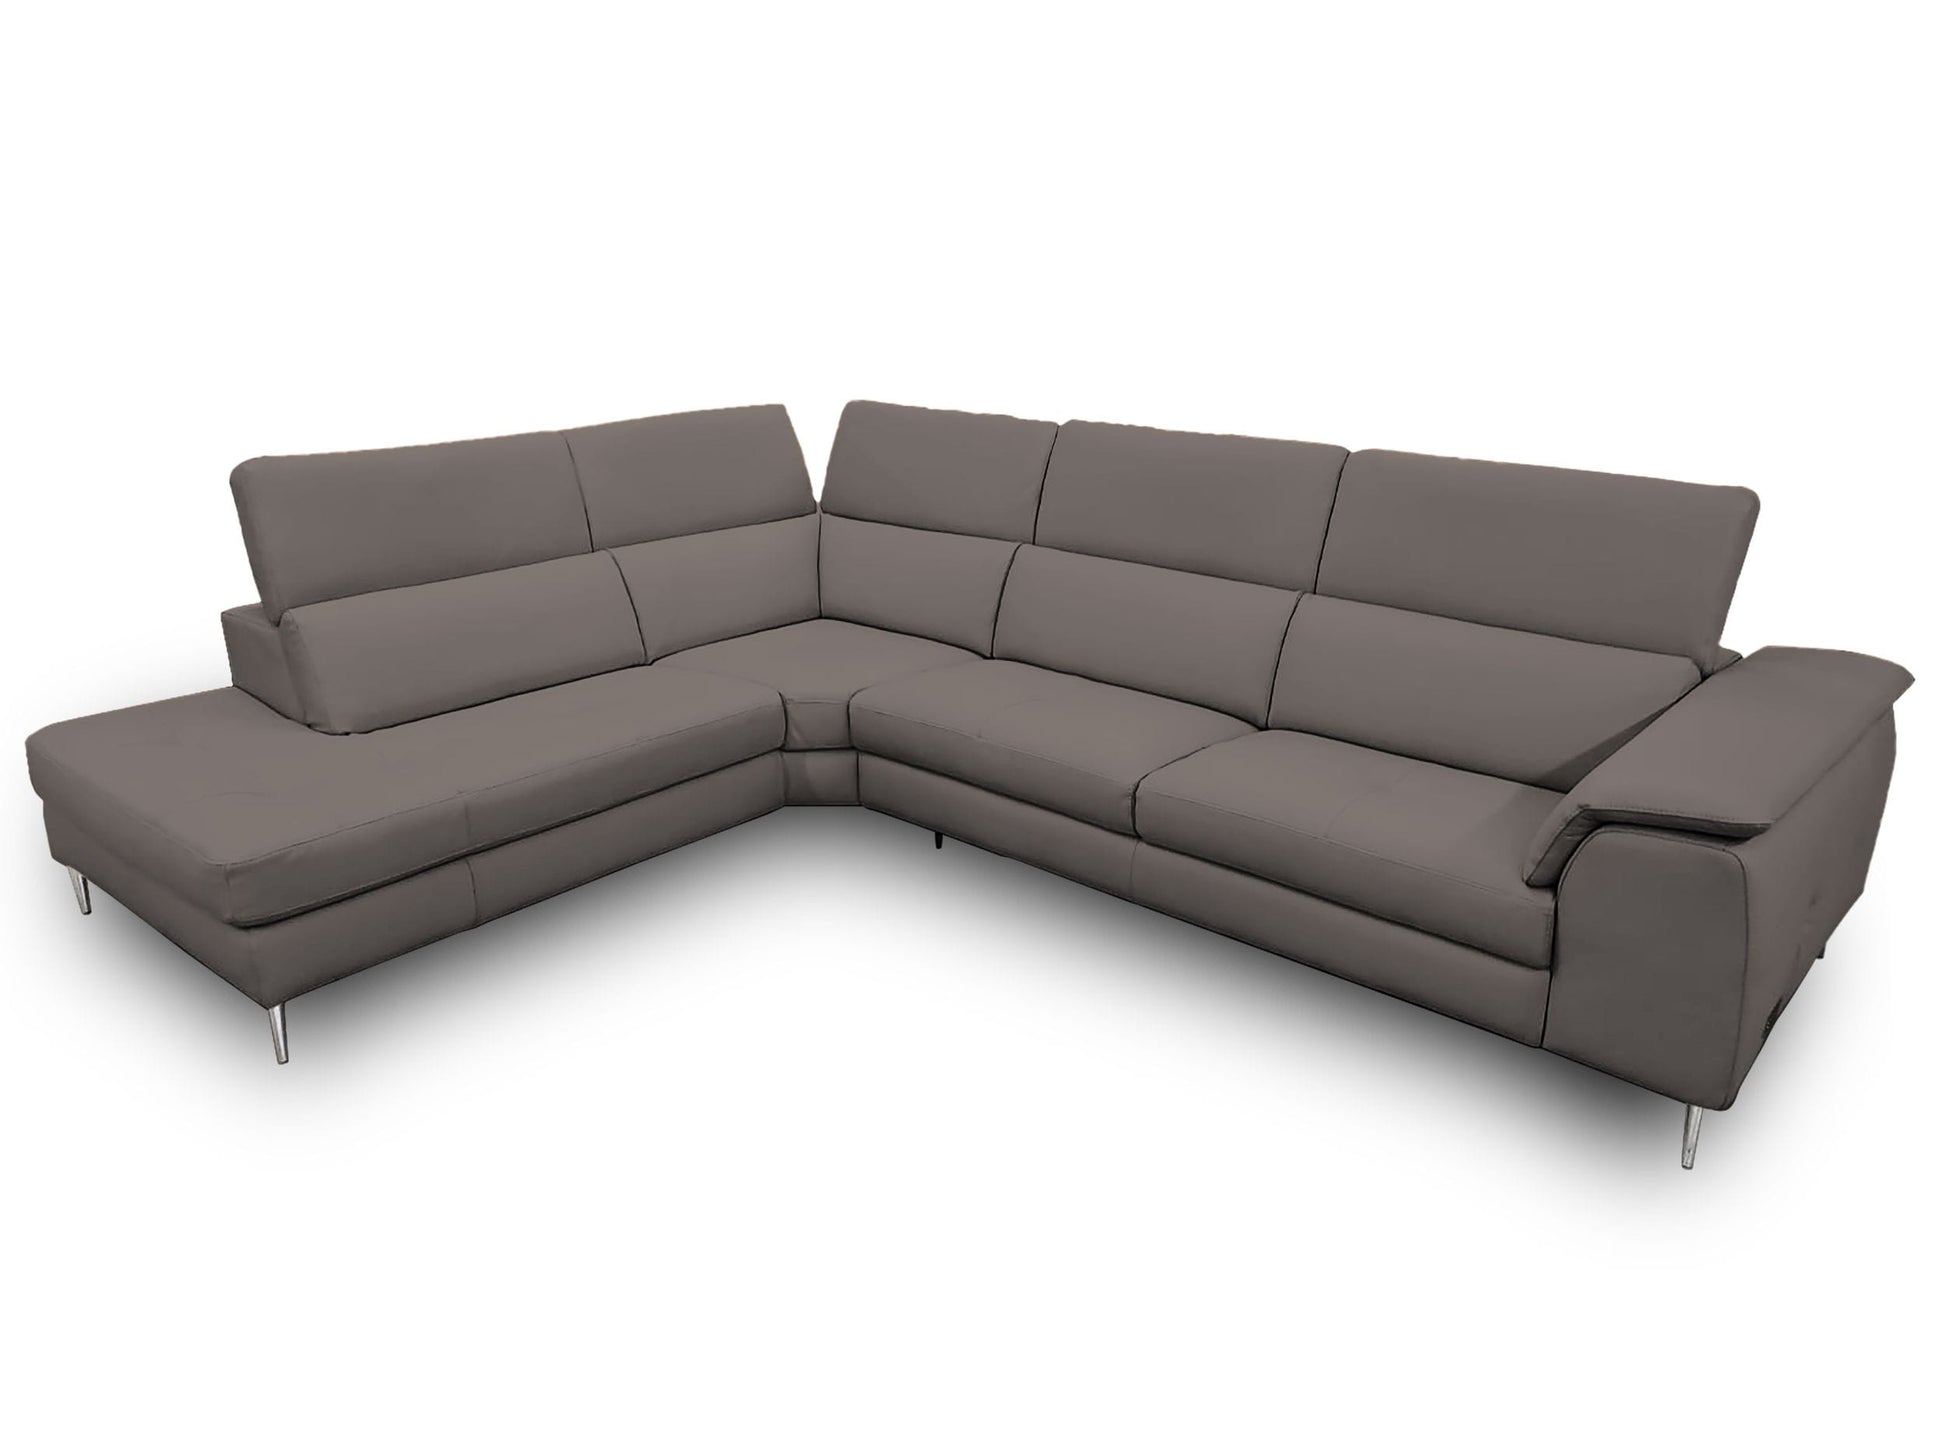 Coronelli Collezioni Viola - Italian Contemporary Brown Leather LAF Chaise Sectional Sofa | Sofas | Modishstore - 2